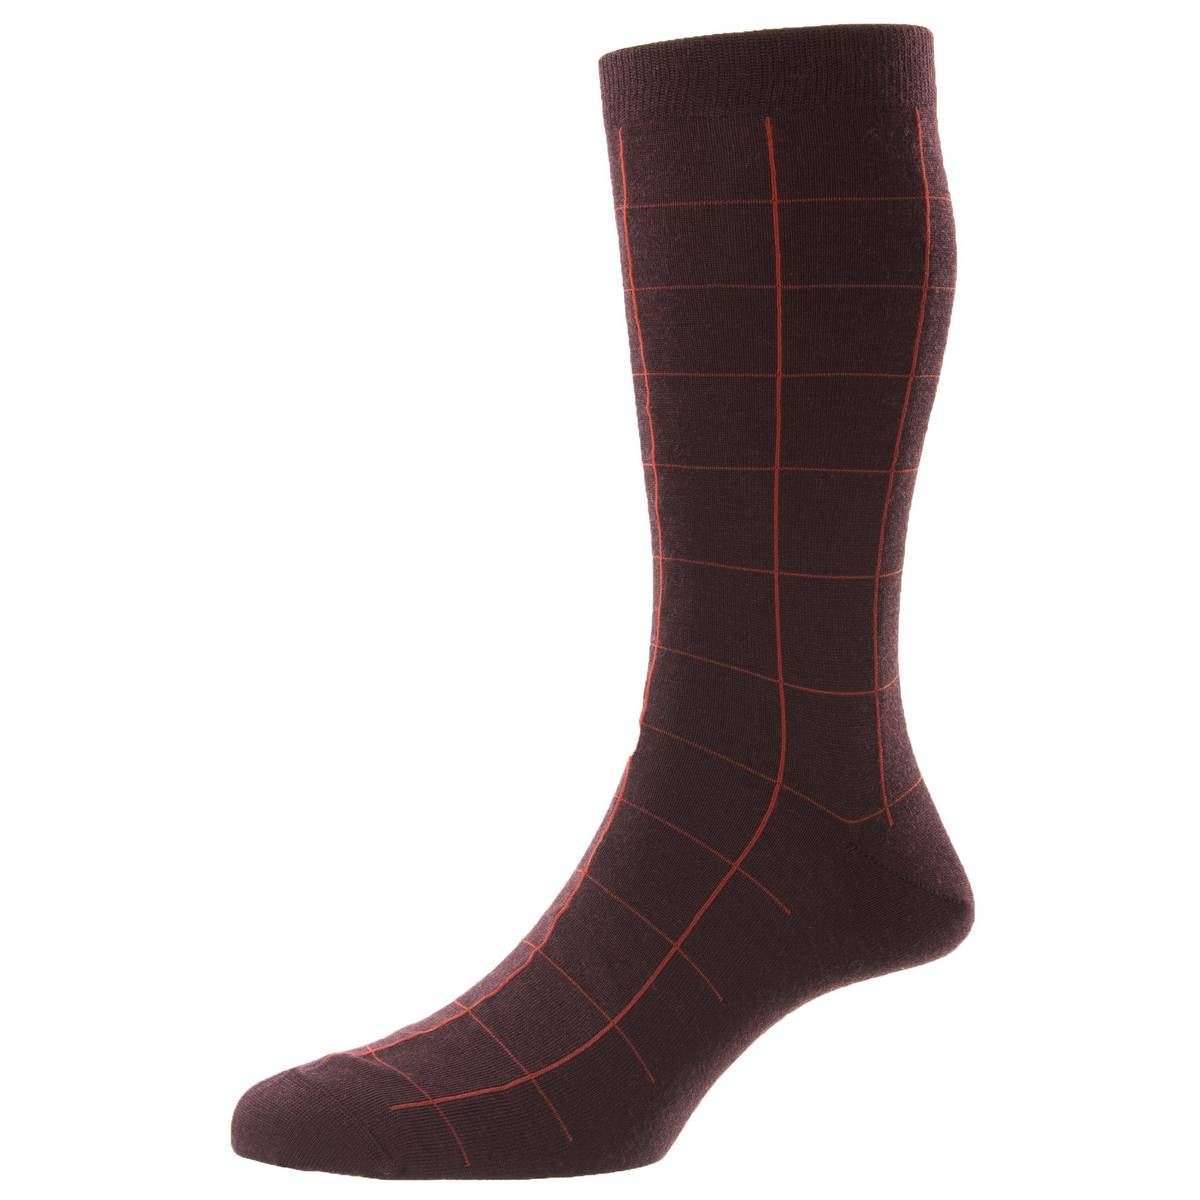 Pantherella Westleigh Merino Wool Socks - Maroon Red